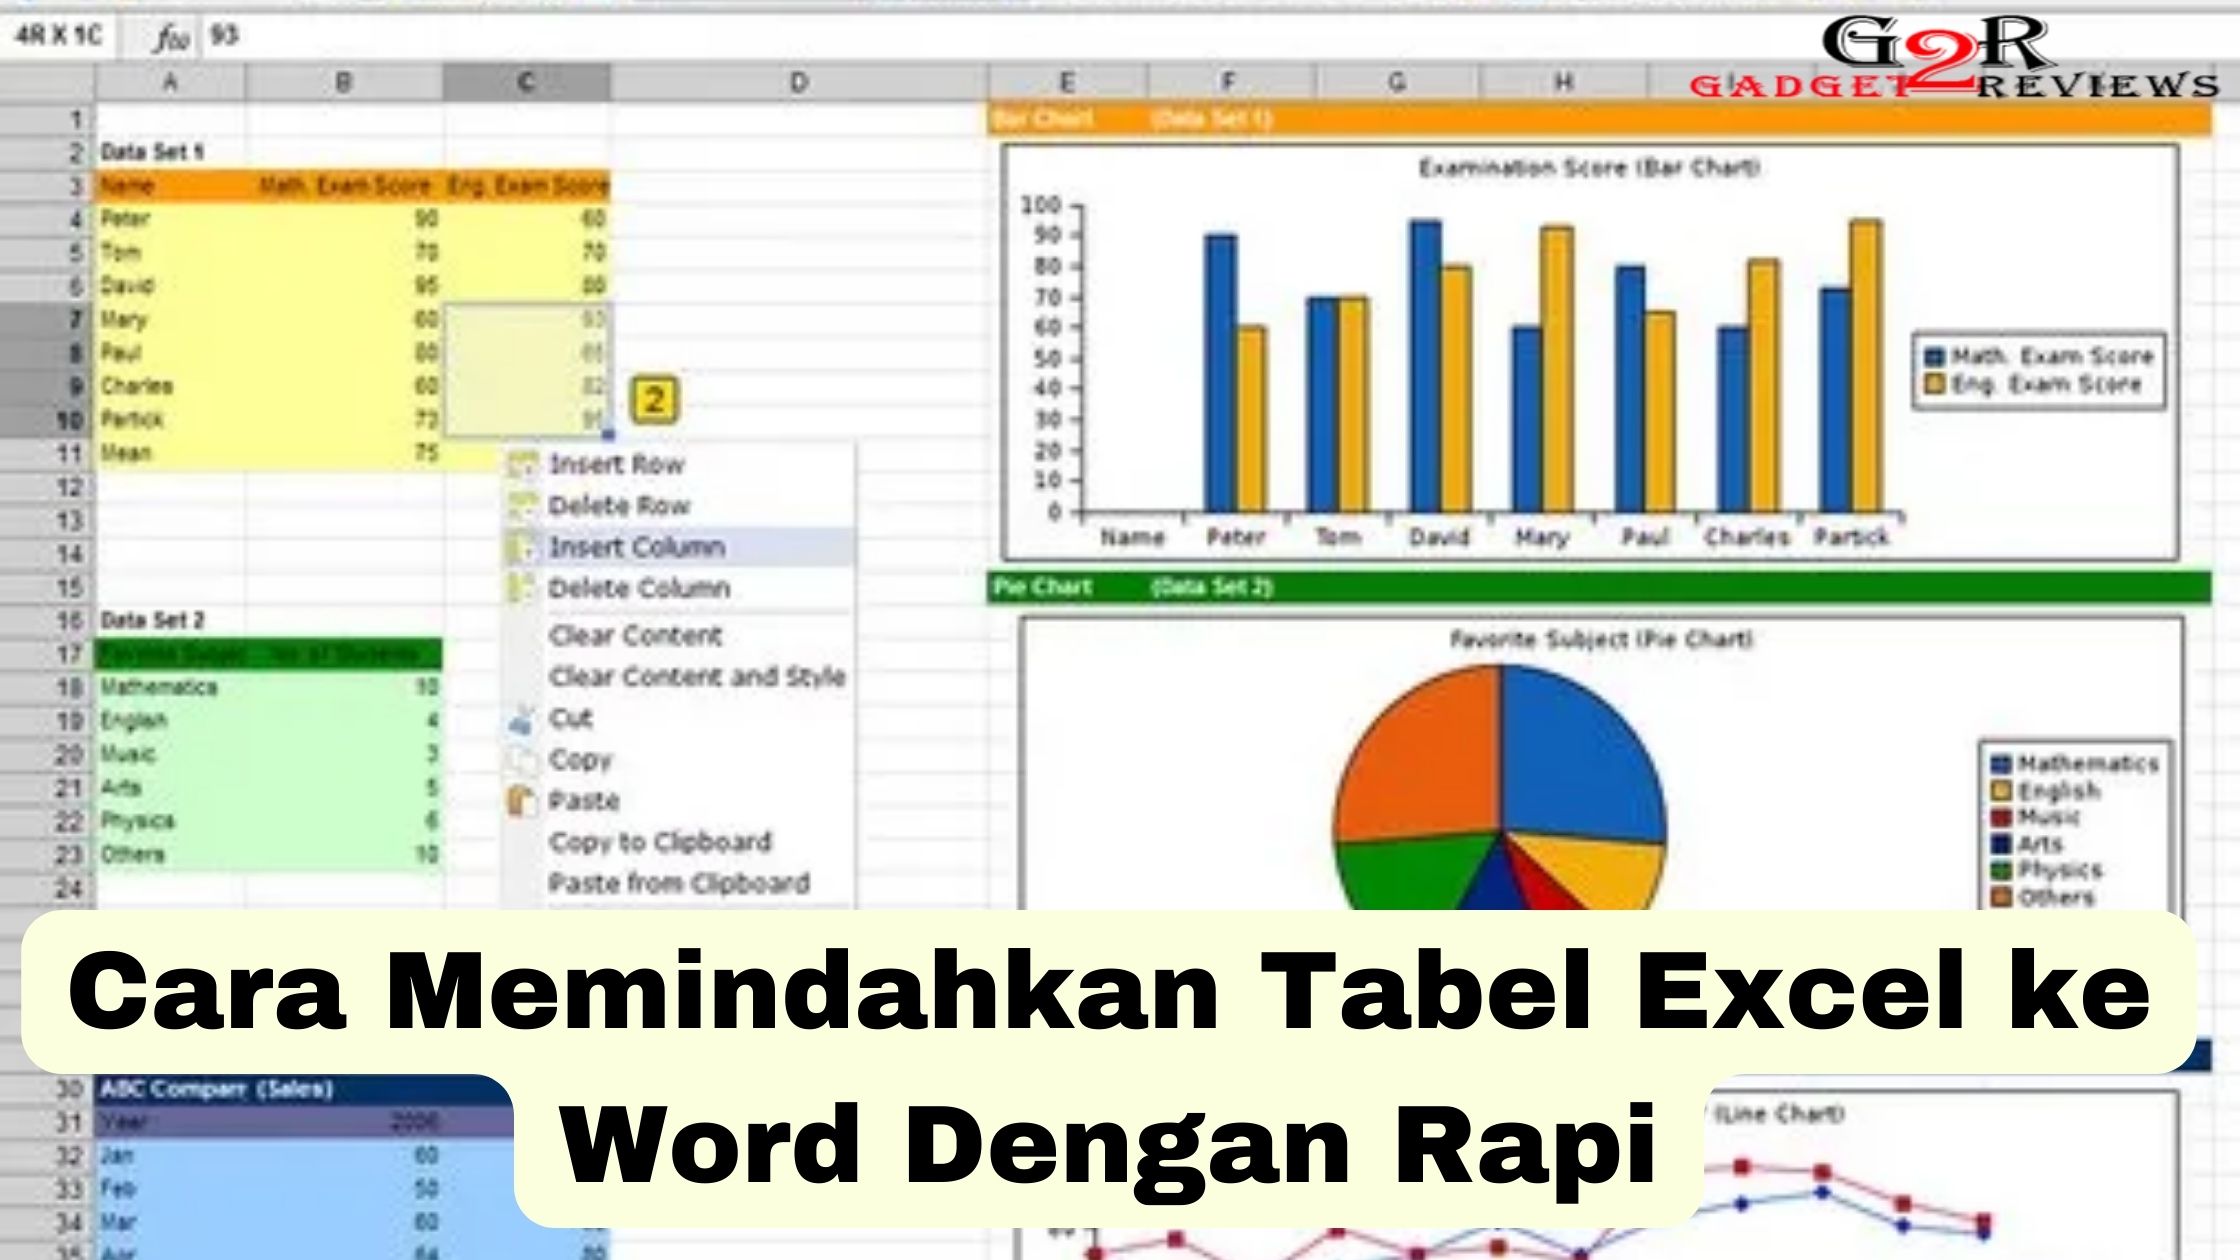 Cara Memindahkan Tabel Excel ke Word Dengan Rapi